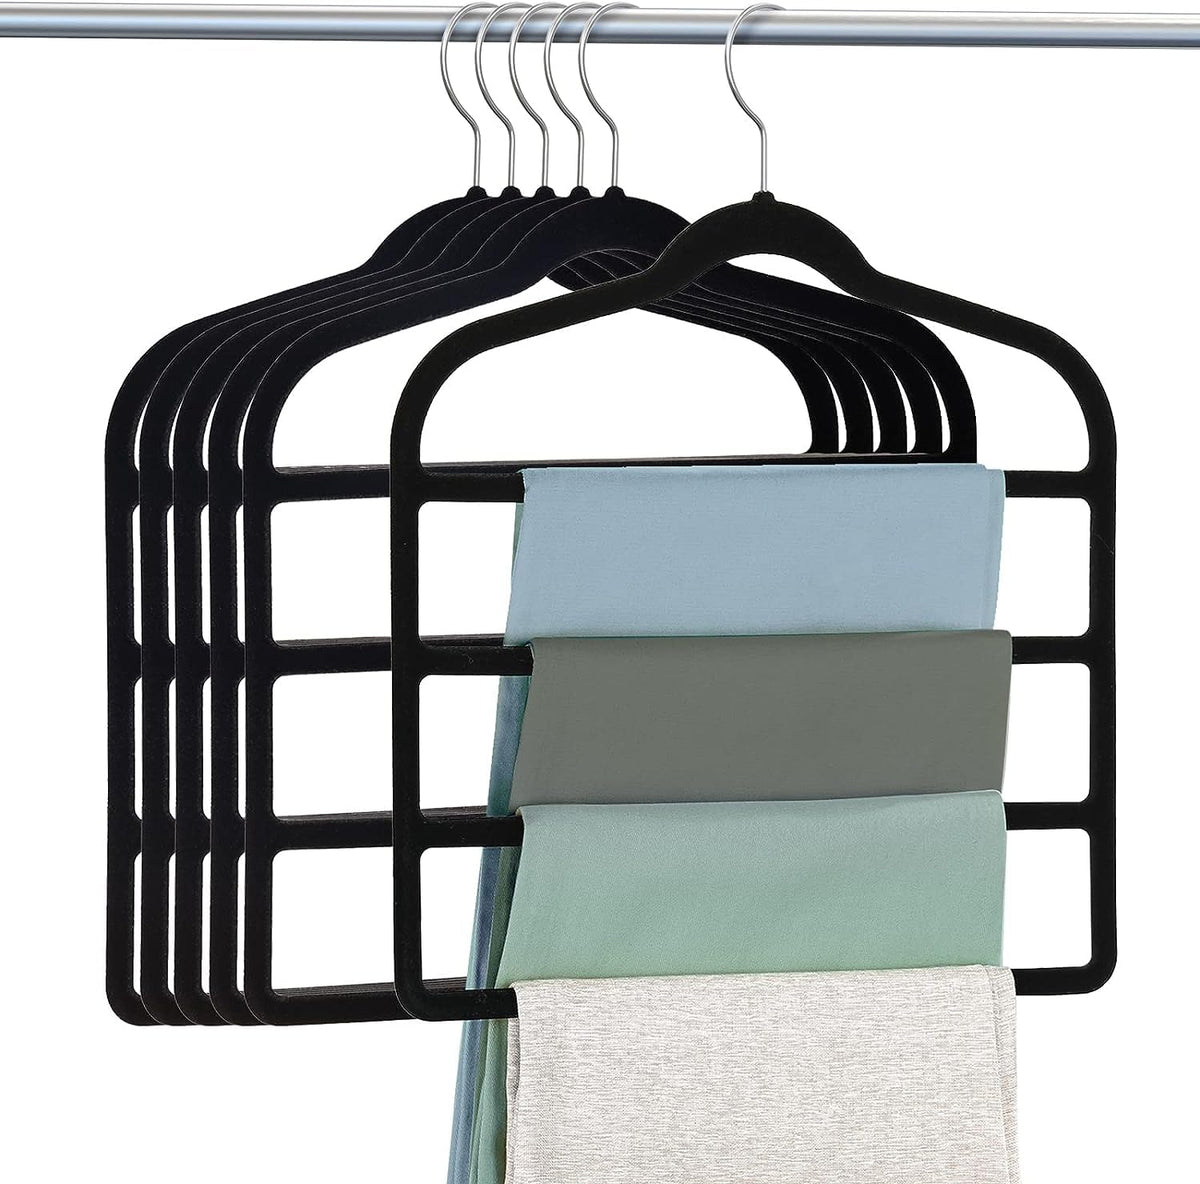 Velvet Pants Hangers - 10 PCS Premium Quality Space Saving Non-Slip Pant Hanger - Strong & Durable – Tie Towel Velvet Clothes Hangers - Closet storage Organizer for Pants Trousers and Scarfs.